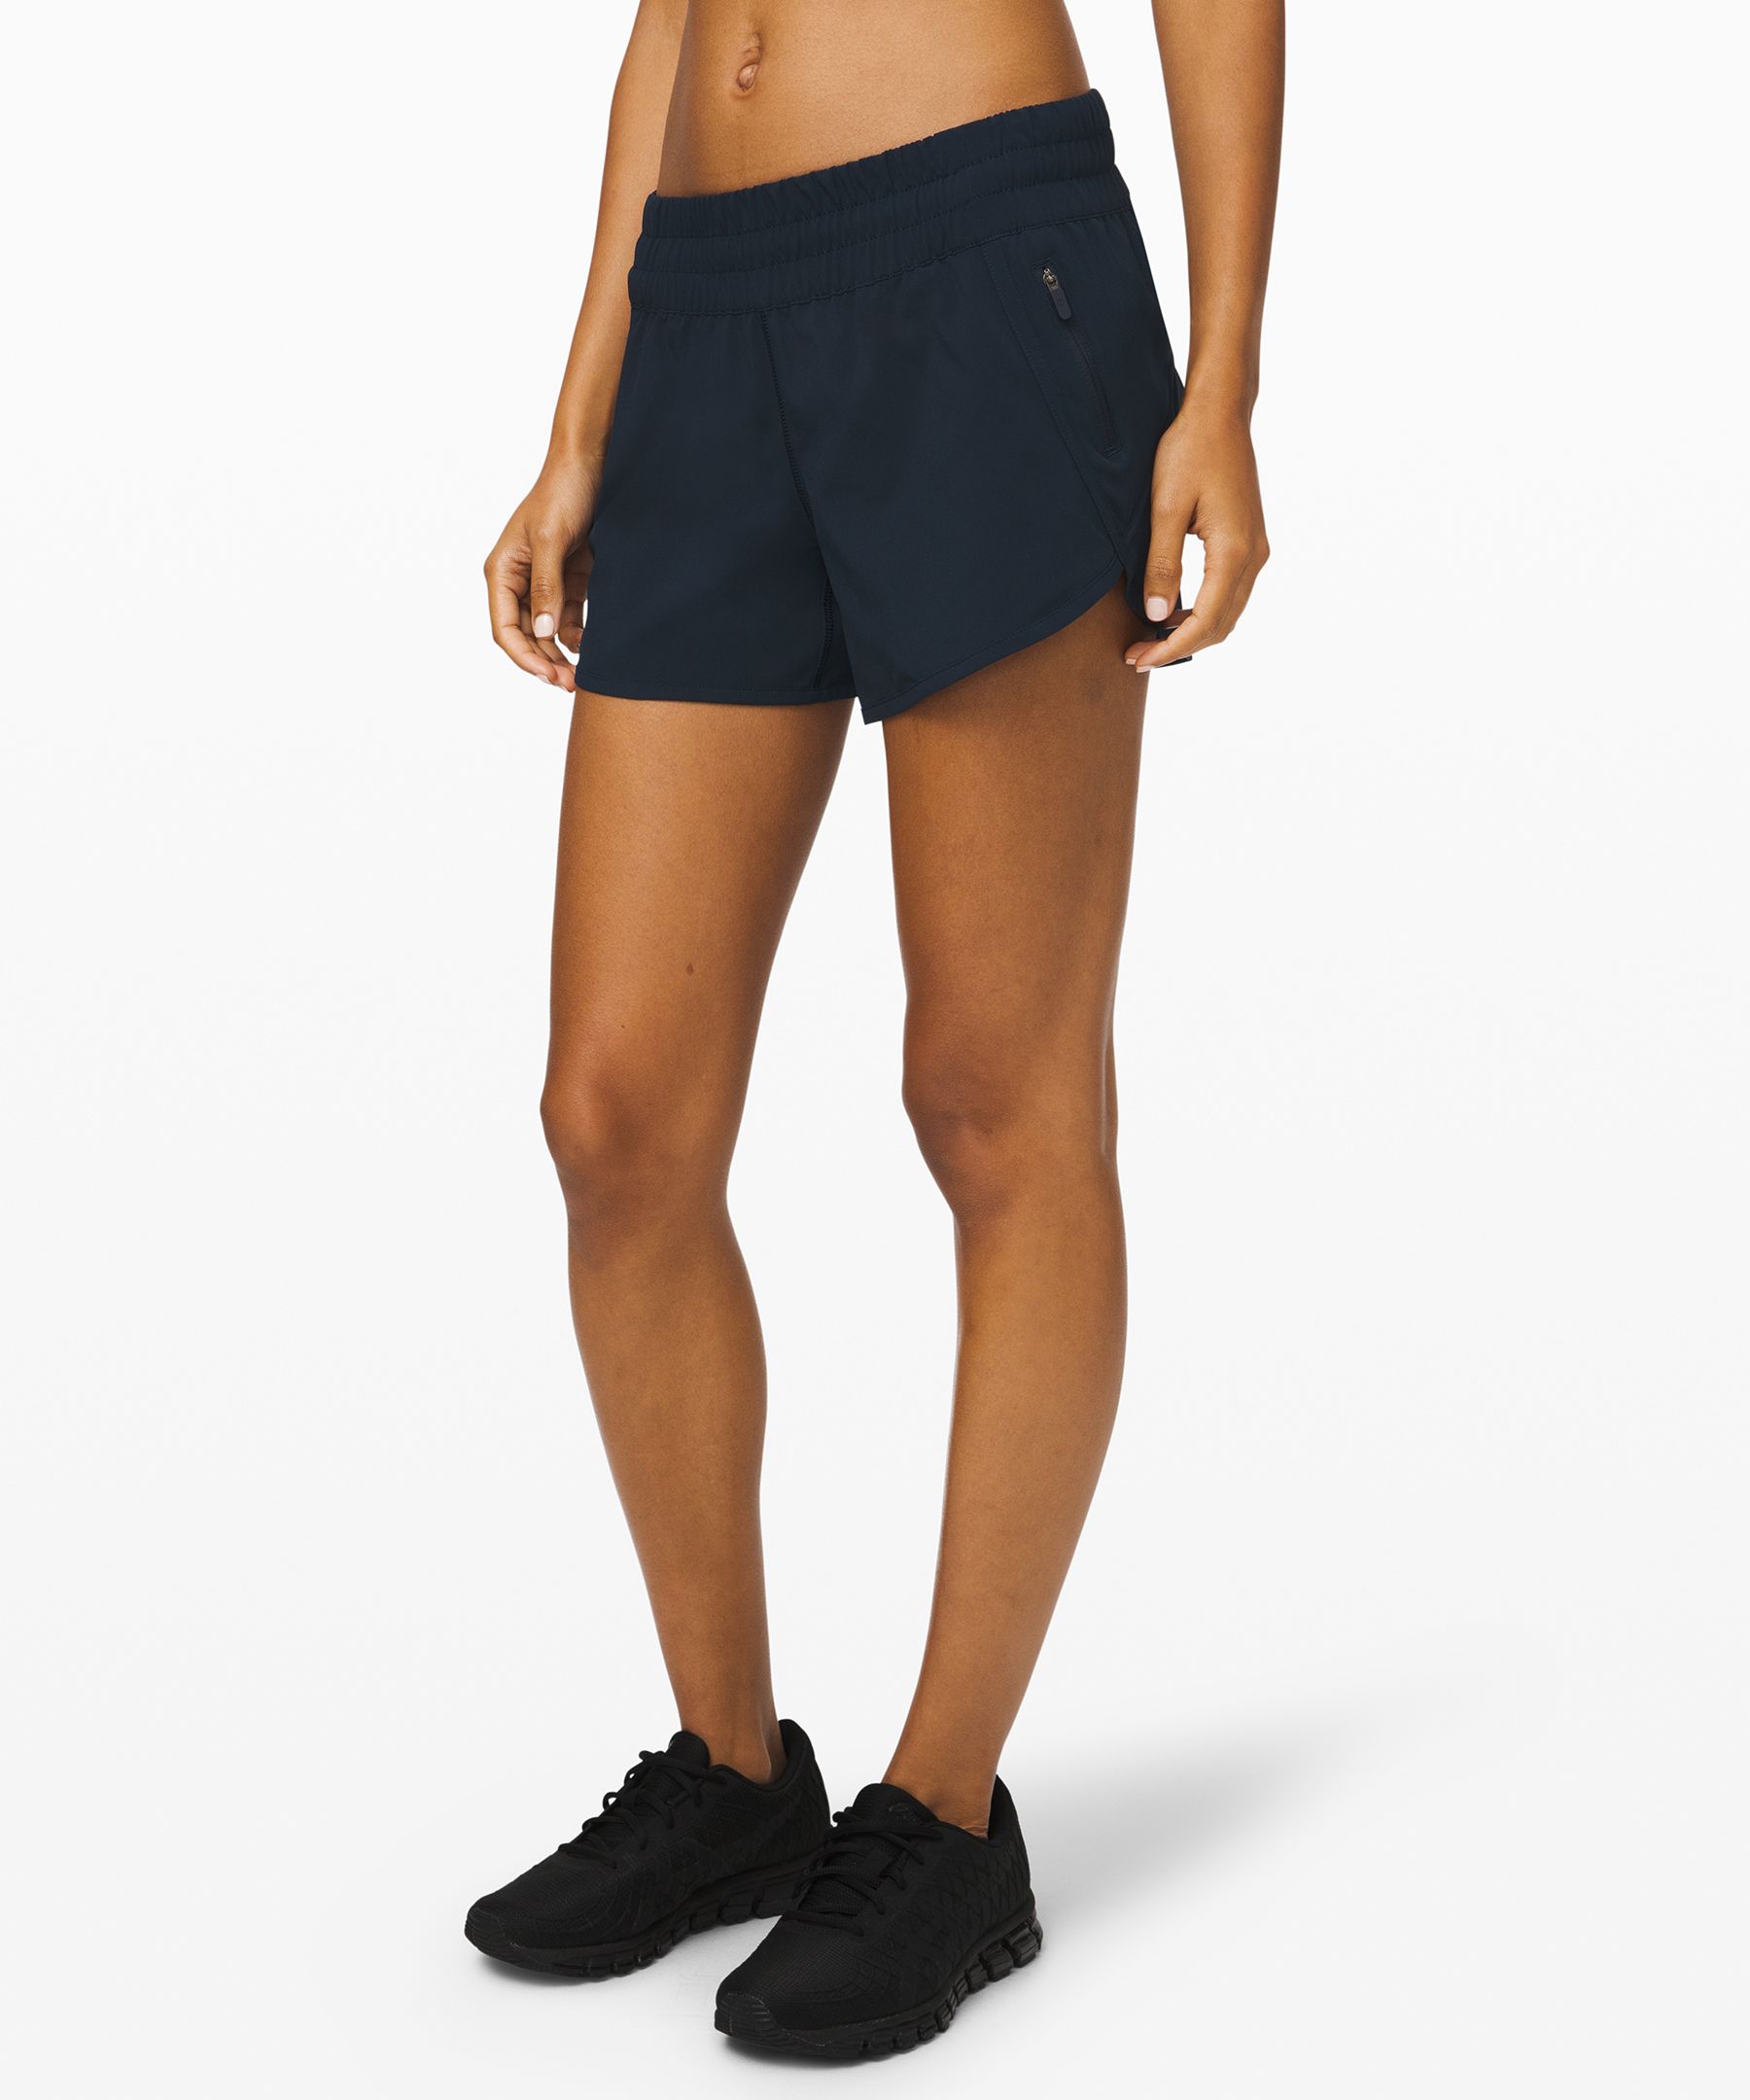 lululemon tracker shorts size 8